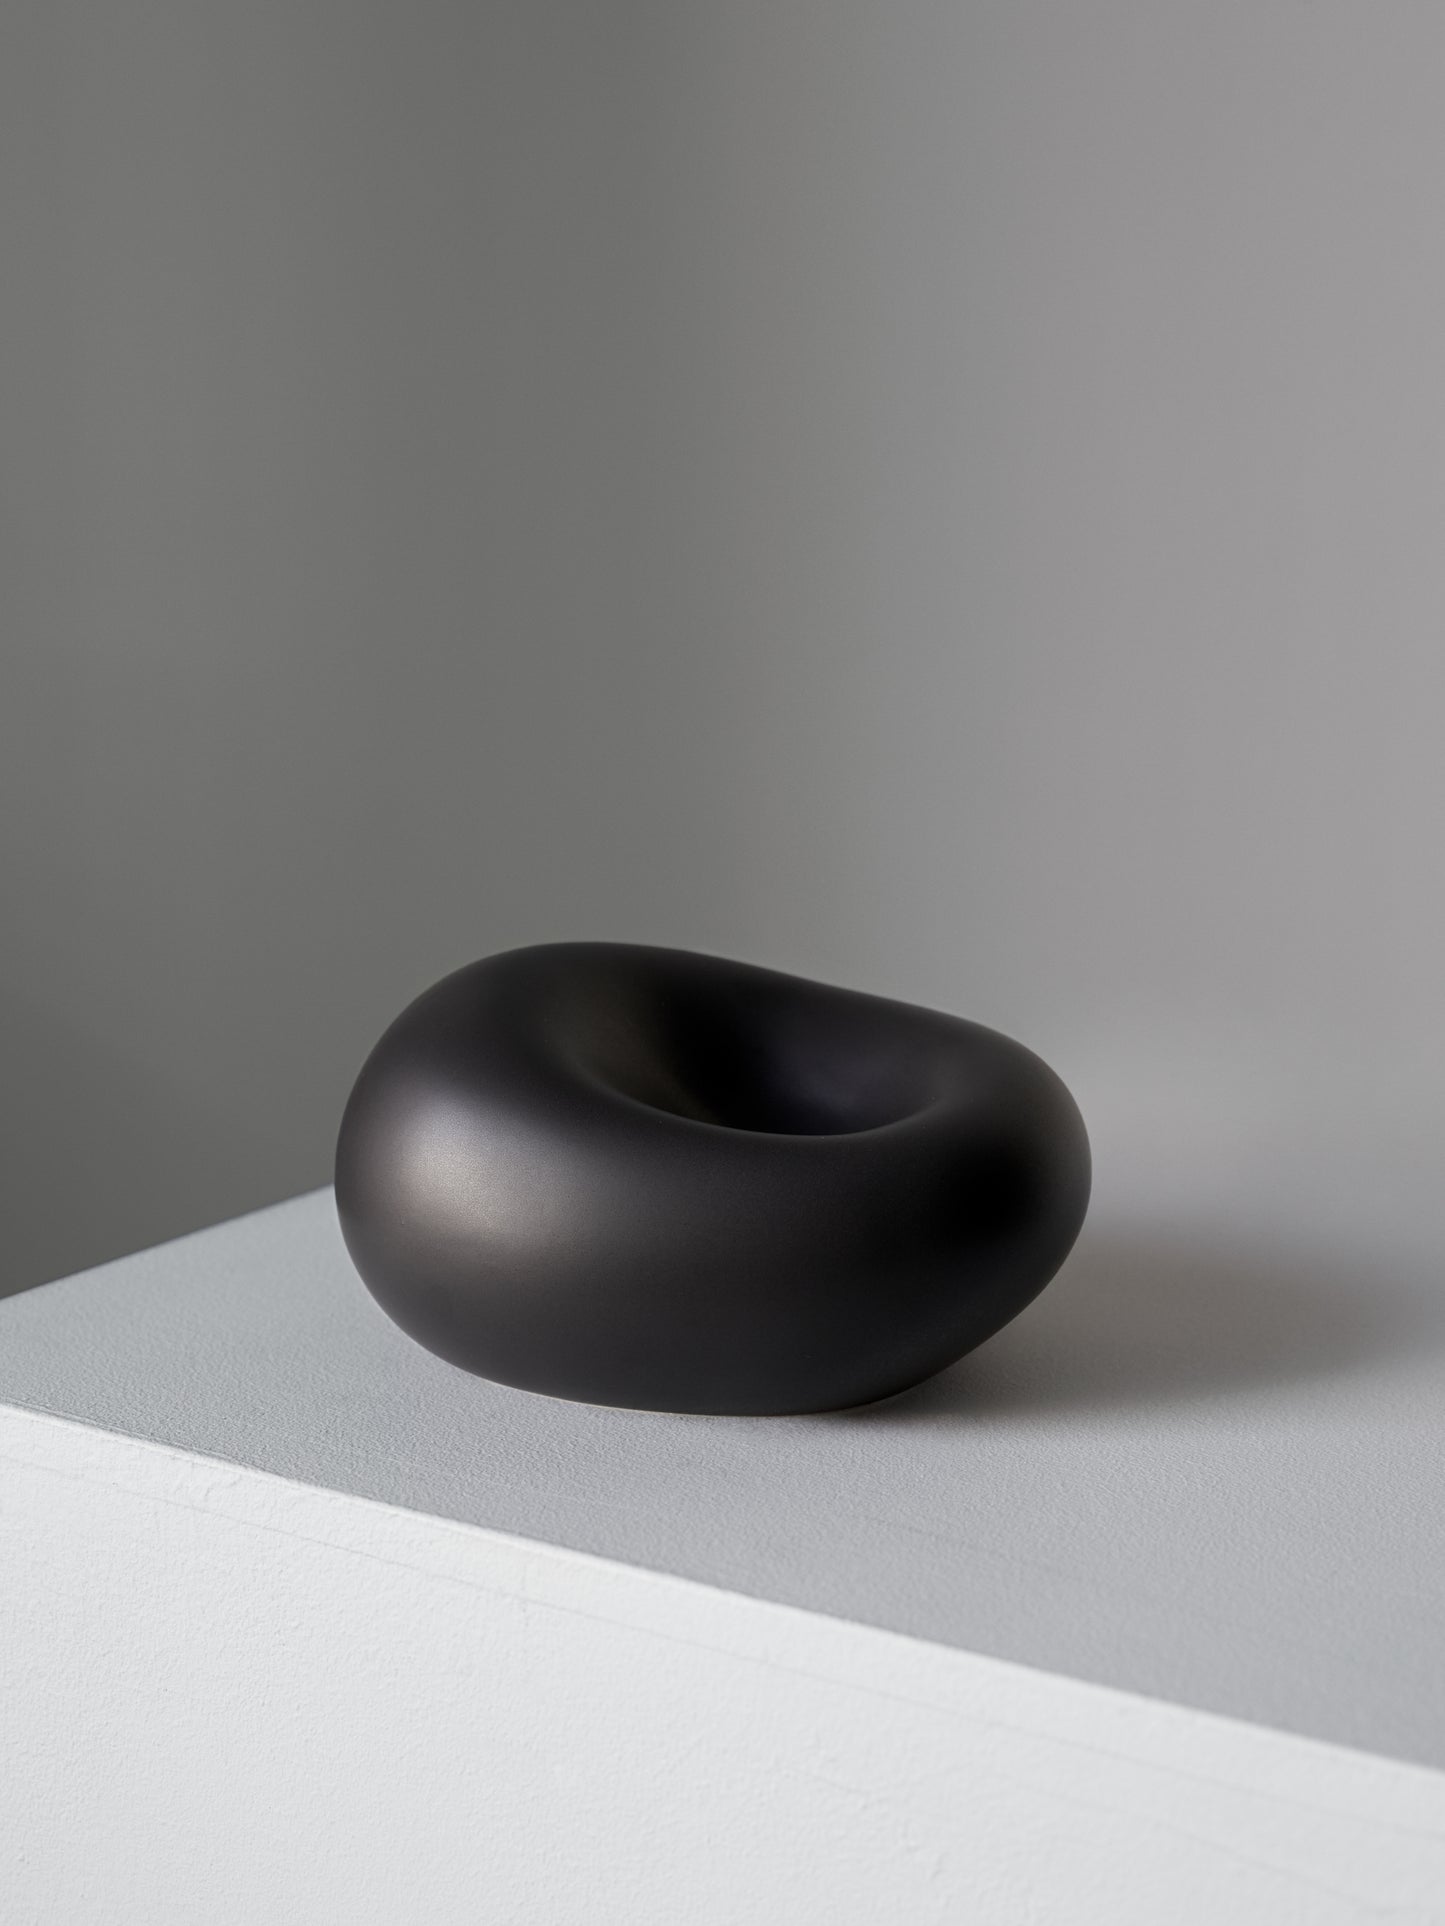 Fredrik Karlsson x Mimmi Blomqvist ceramics #14, 2020